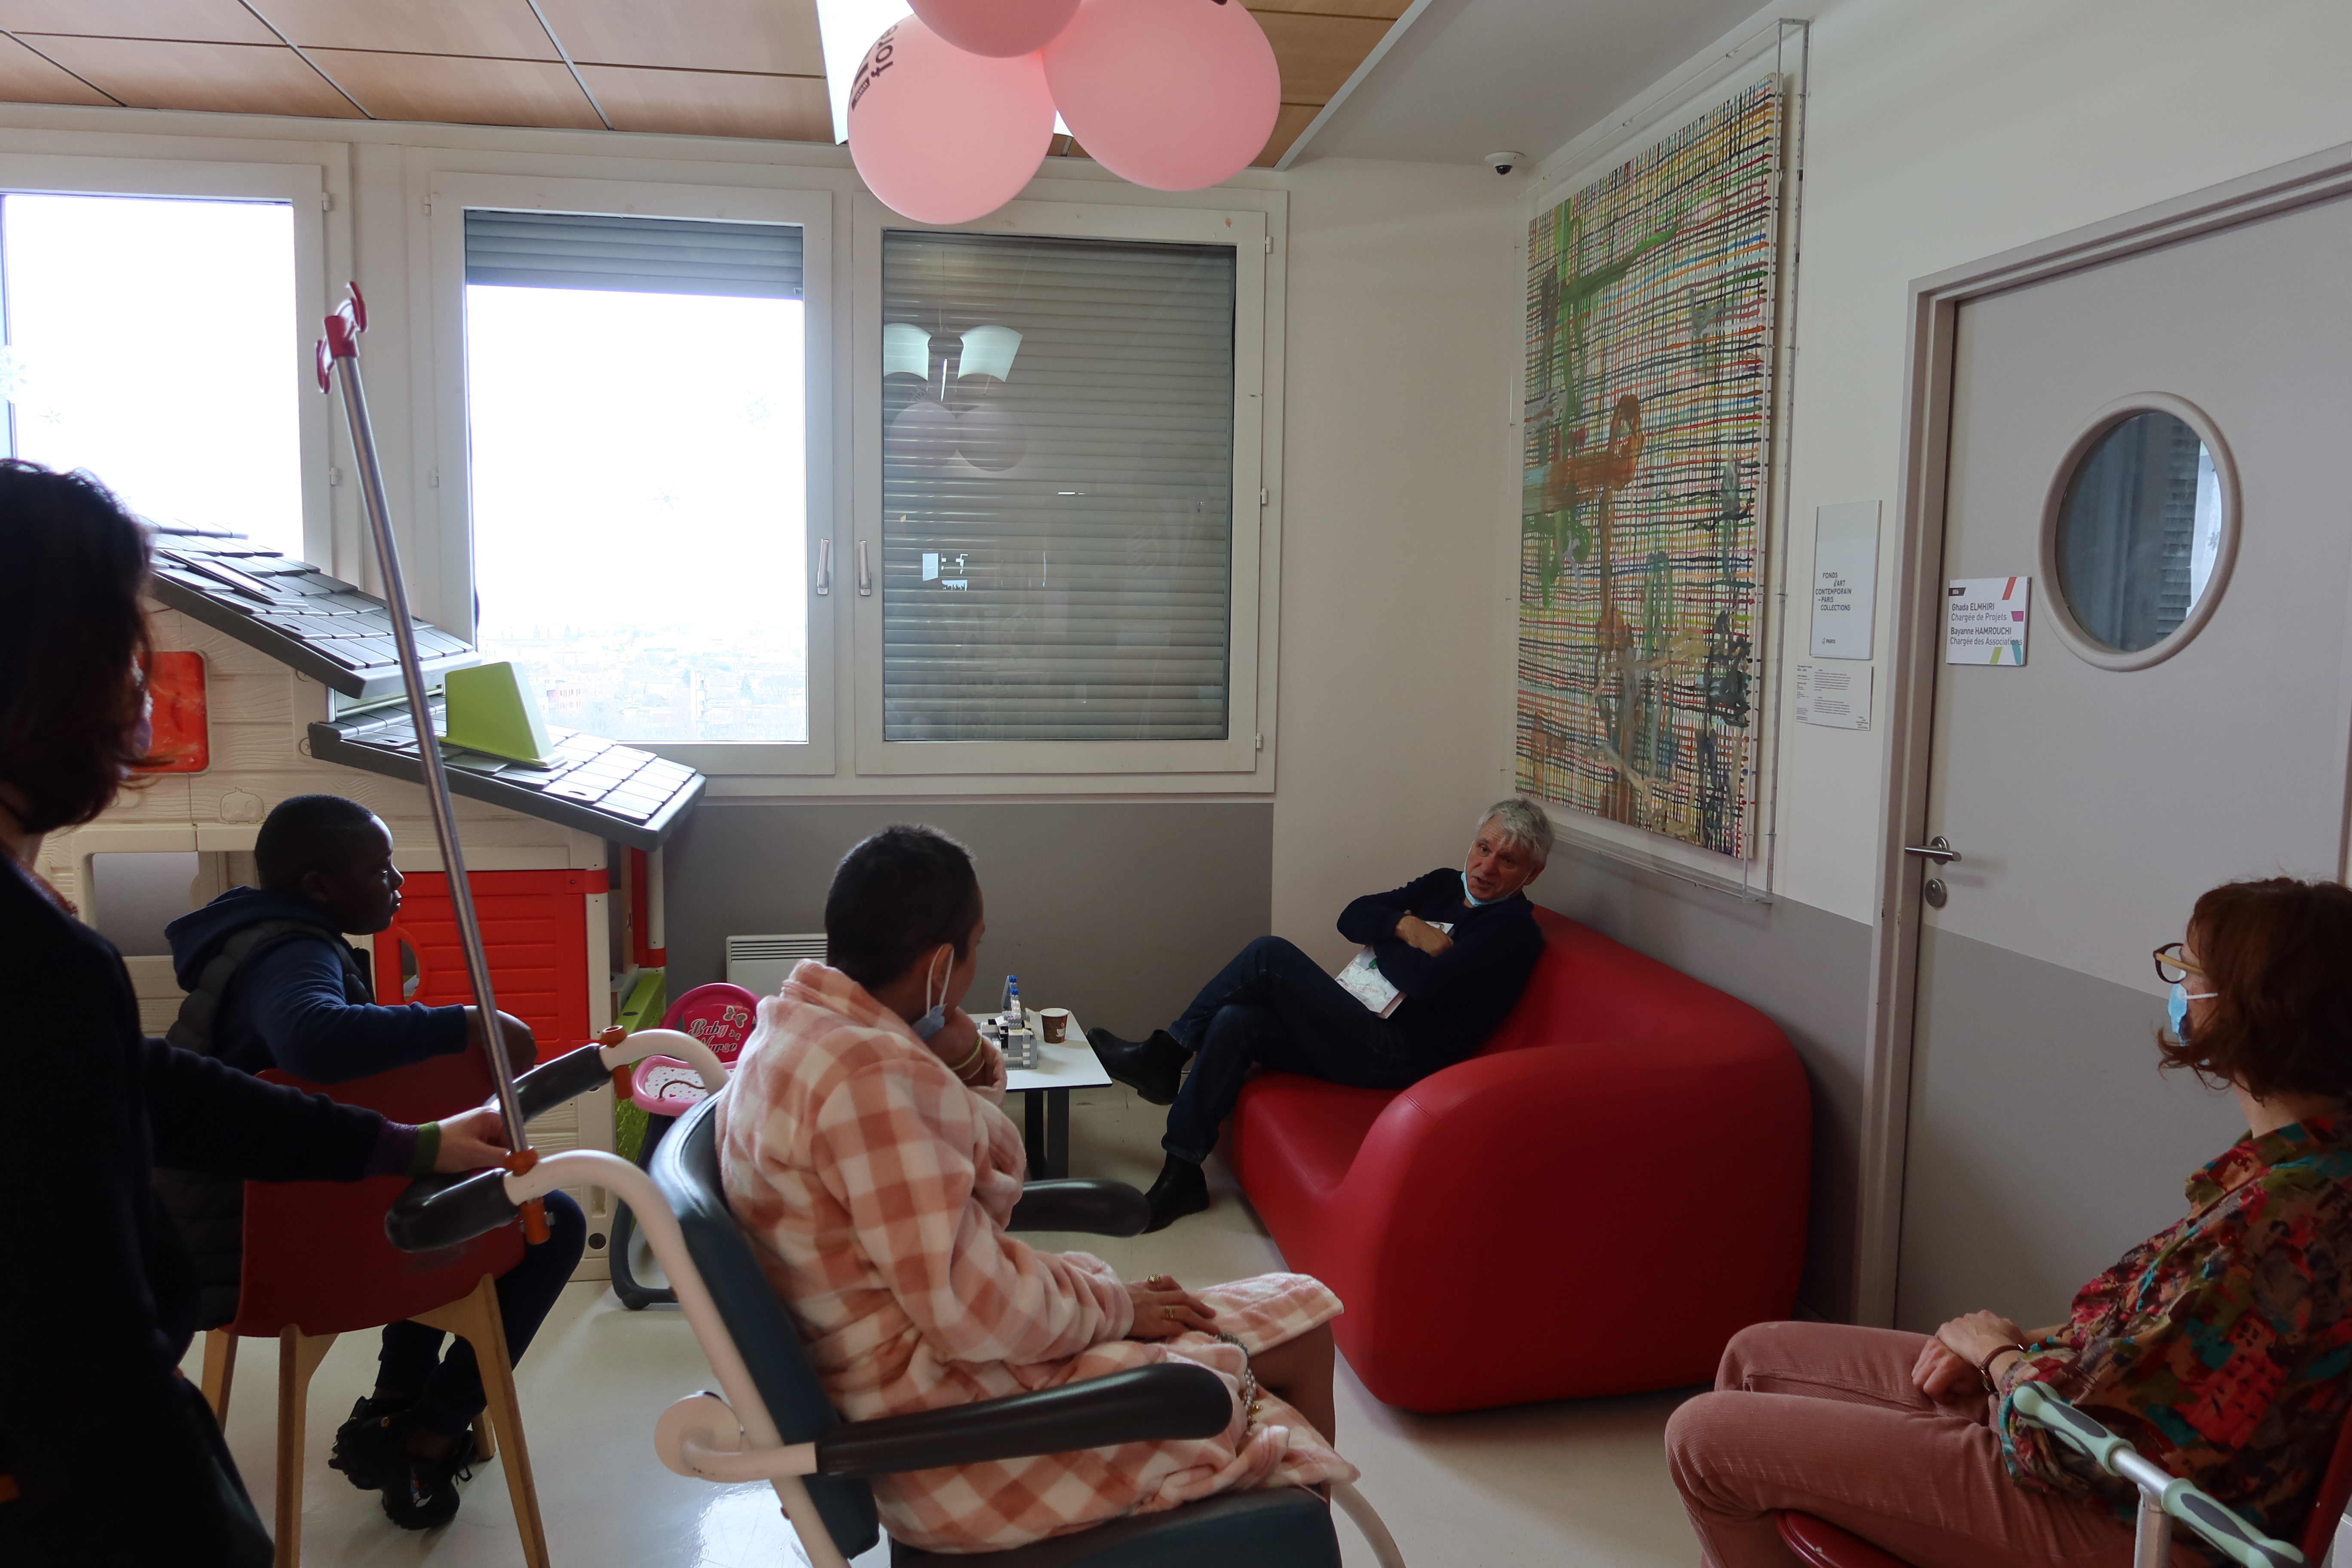 Dans une salle d'attente, l'artiste est assis confortablement dans un canapé rouge. Détendu, il discute avec deux jeunes (un garçon et une femme) qui l'écoute attentivement.